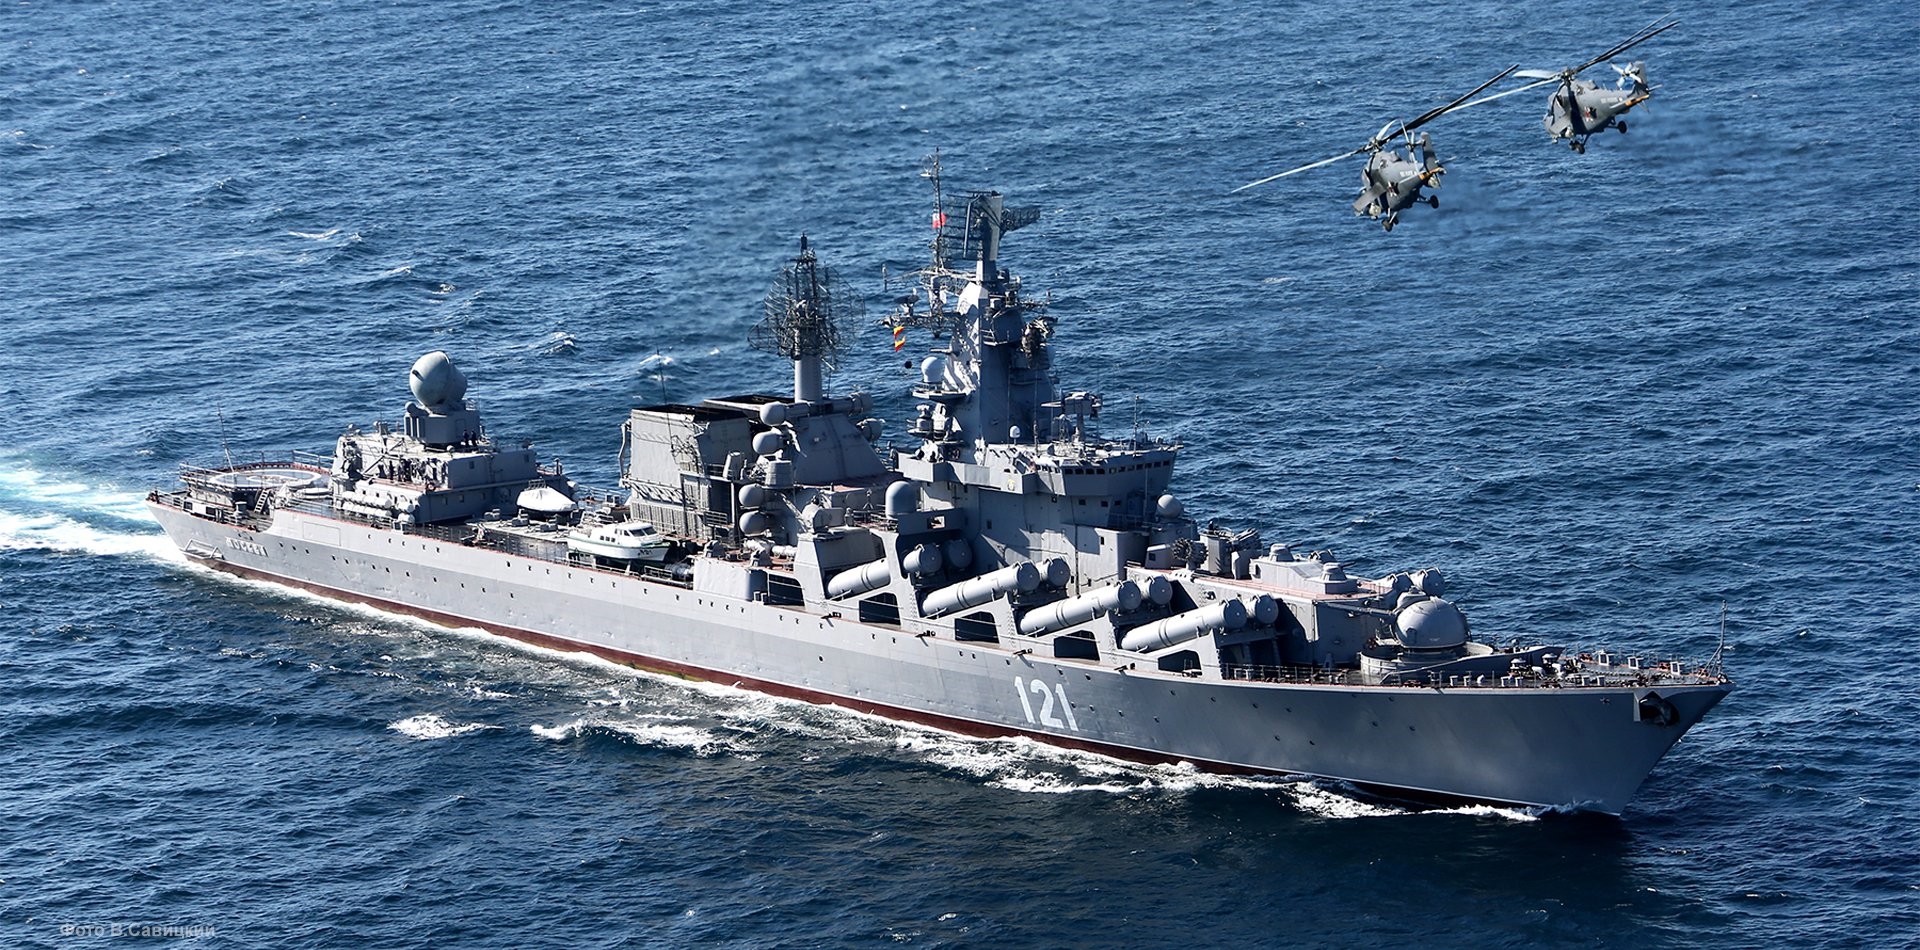 Βύθιση πλοίου Moskva: Αυθεντικές οι φωτογραφίες από τη “λαβωμένη” ναυαρχίδα